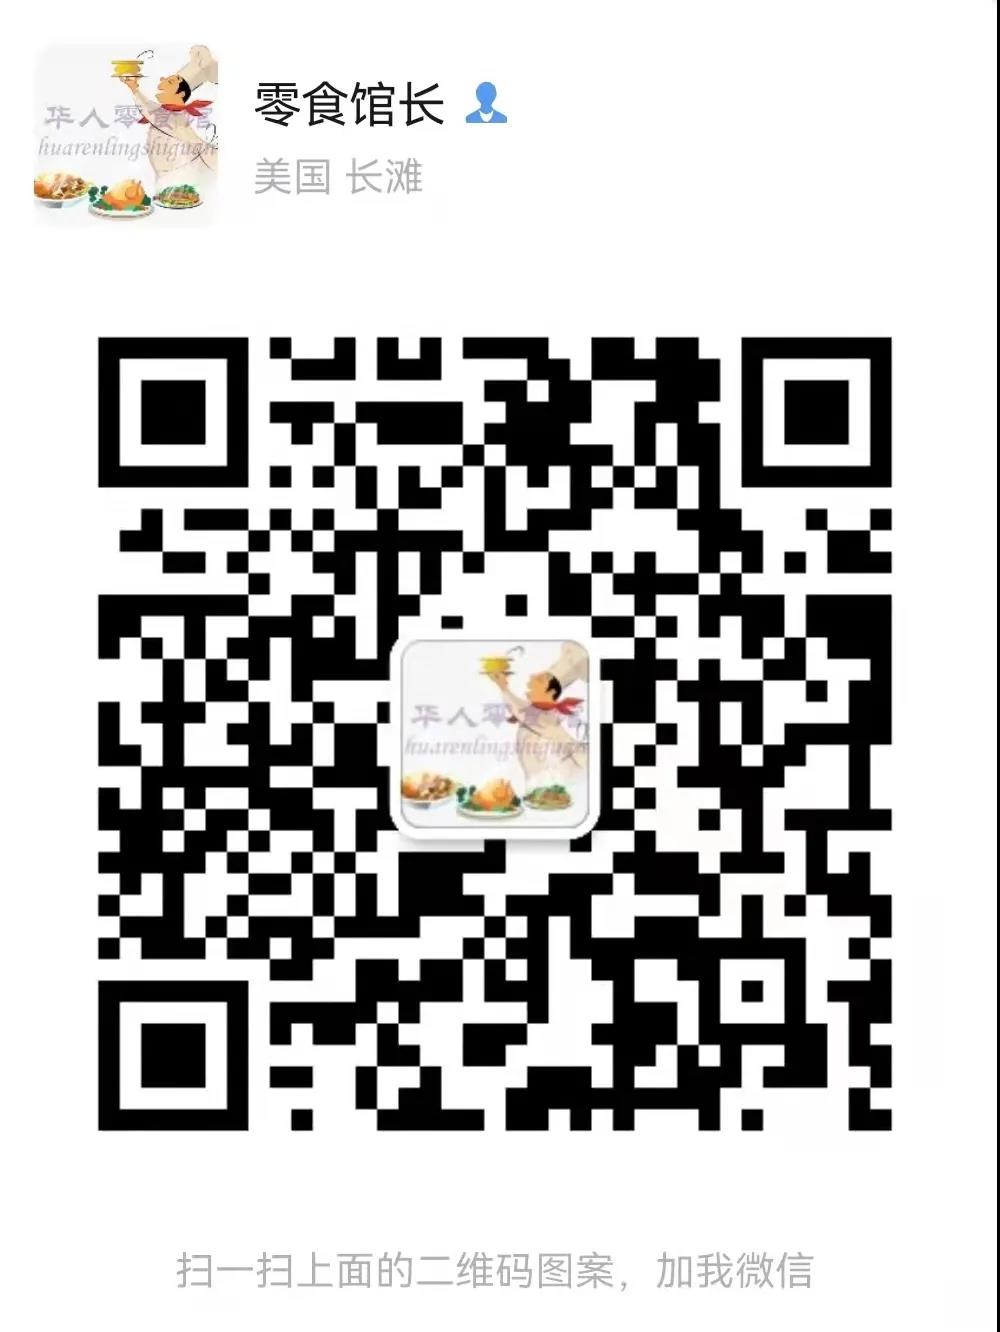 WeChat Image_20220113165200.jpg